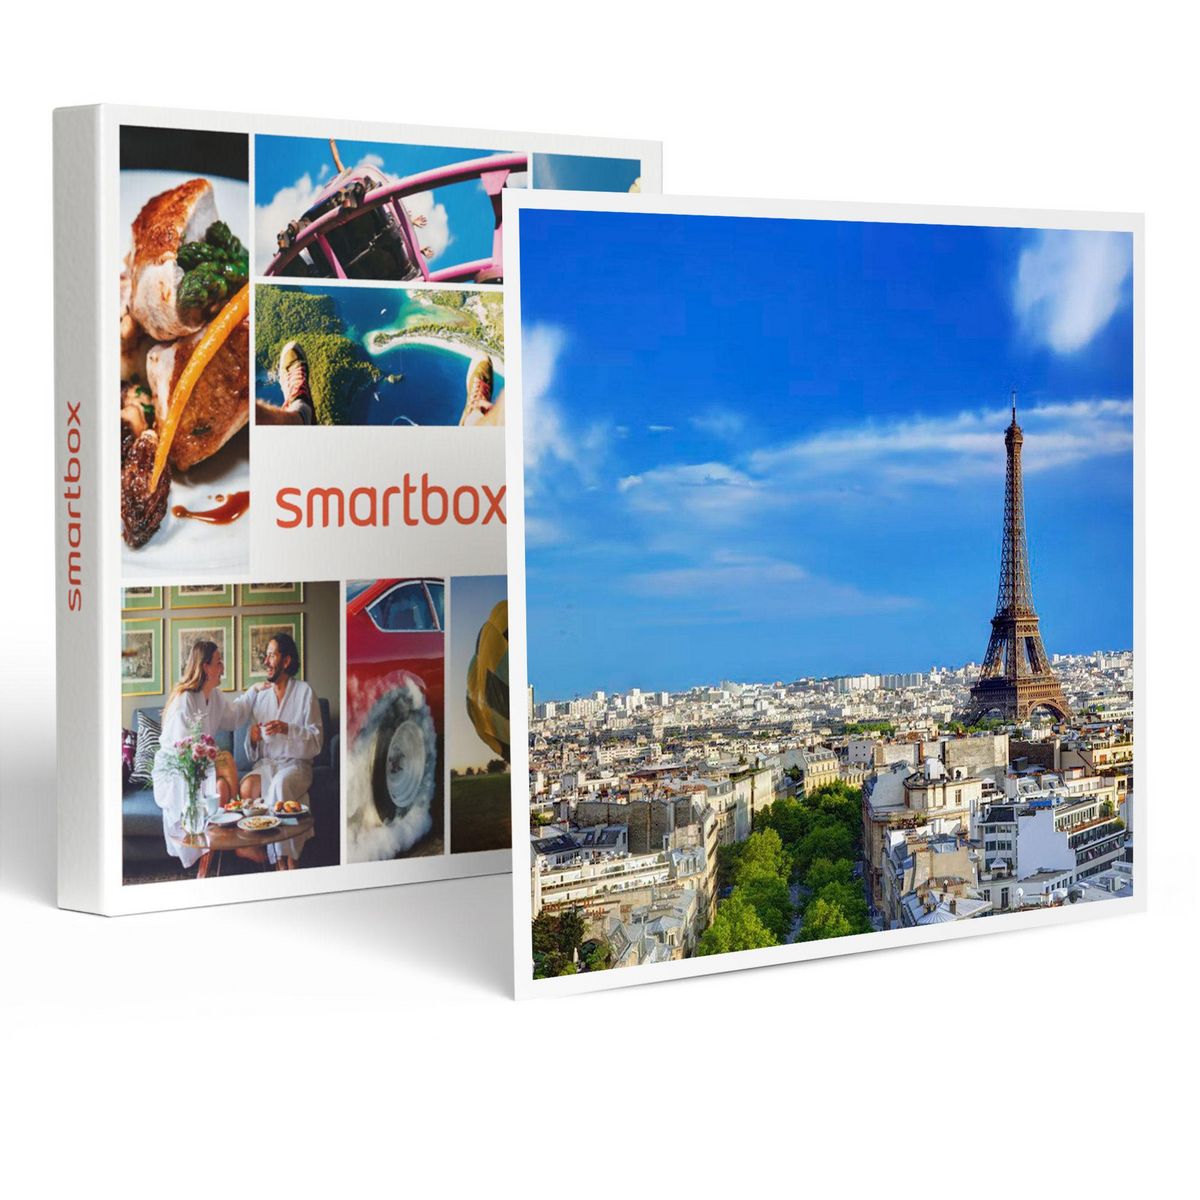 Smartbox Accès au sommet de la tour Eiffel avec billet coupe-file et audio-guide pour 2 adultes et 2 enfants - Coffret Cadeau Sport & Aventure